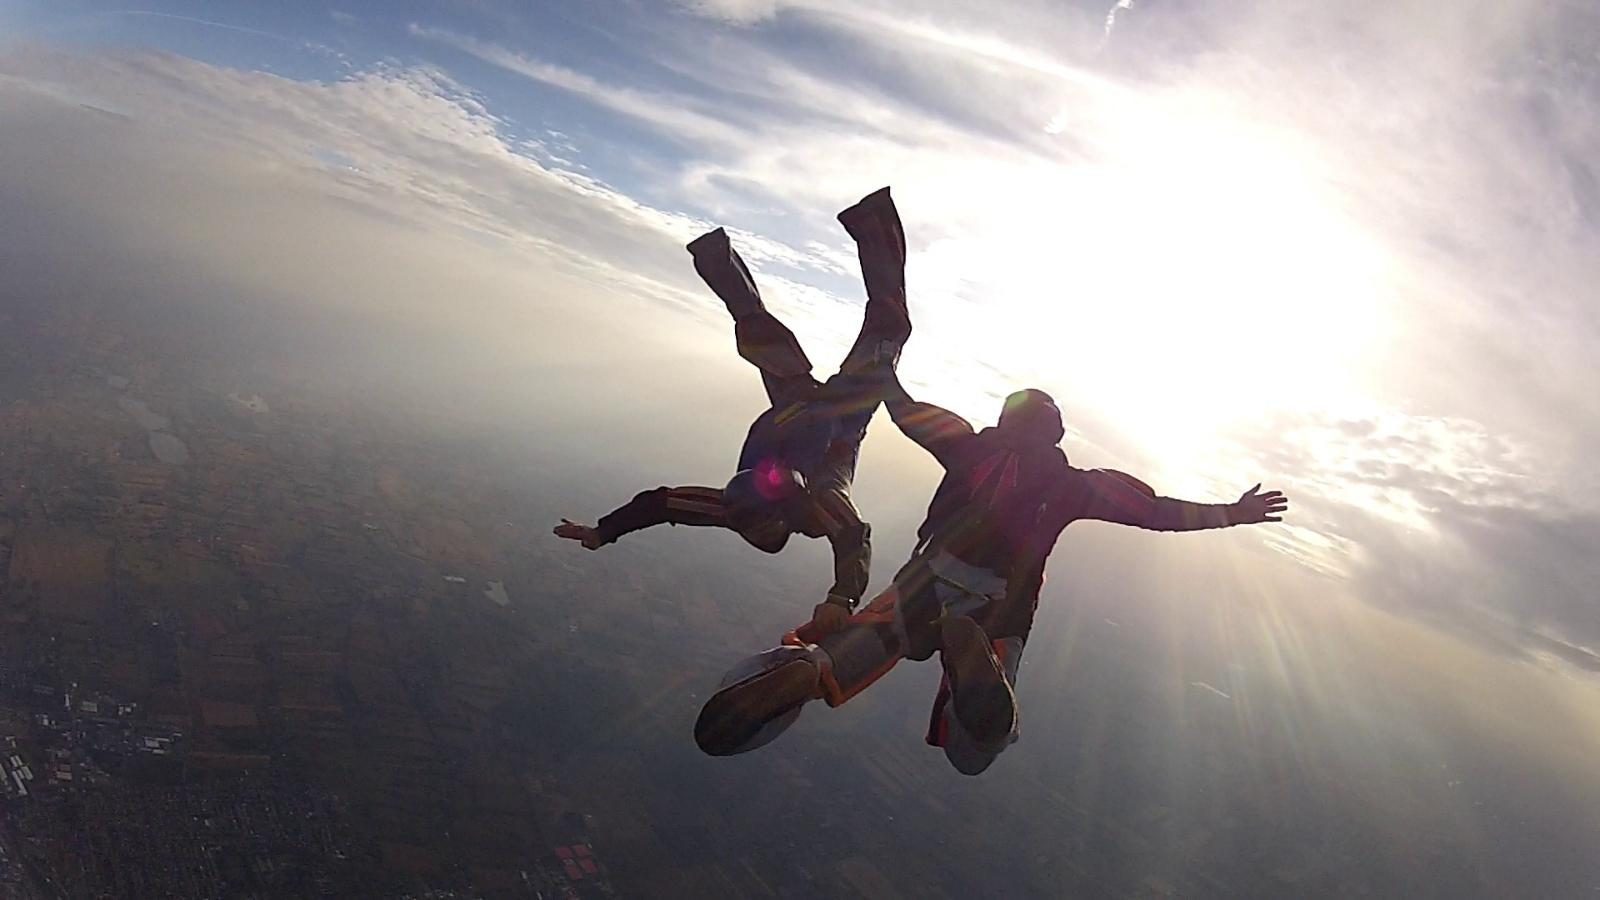 Les sauts en parachute - Comprendre vos rêves - Kaya